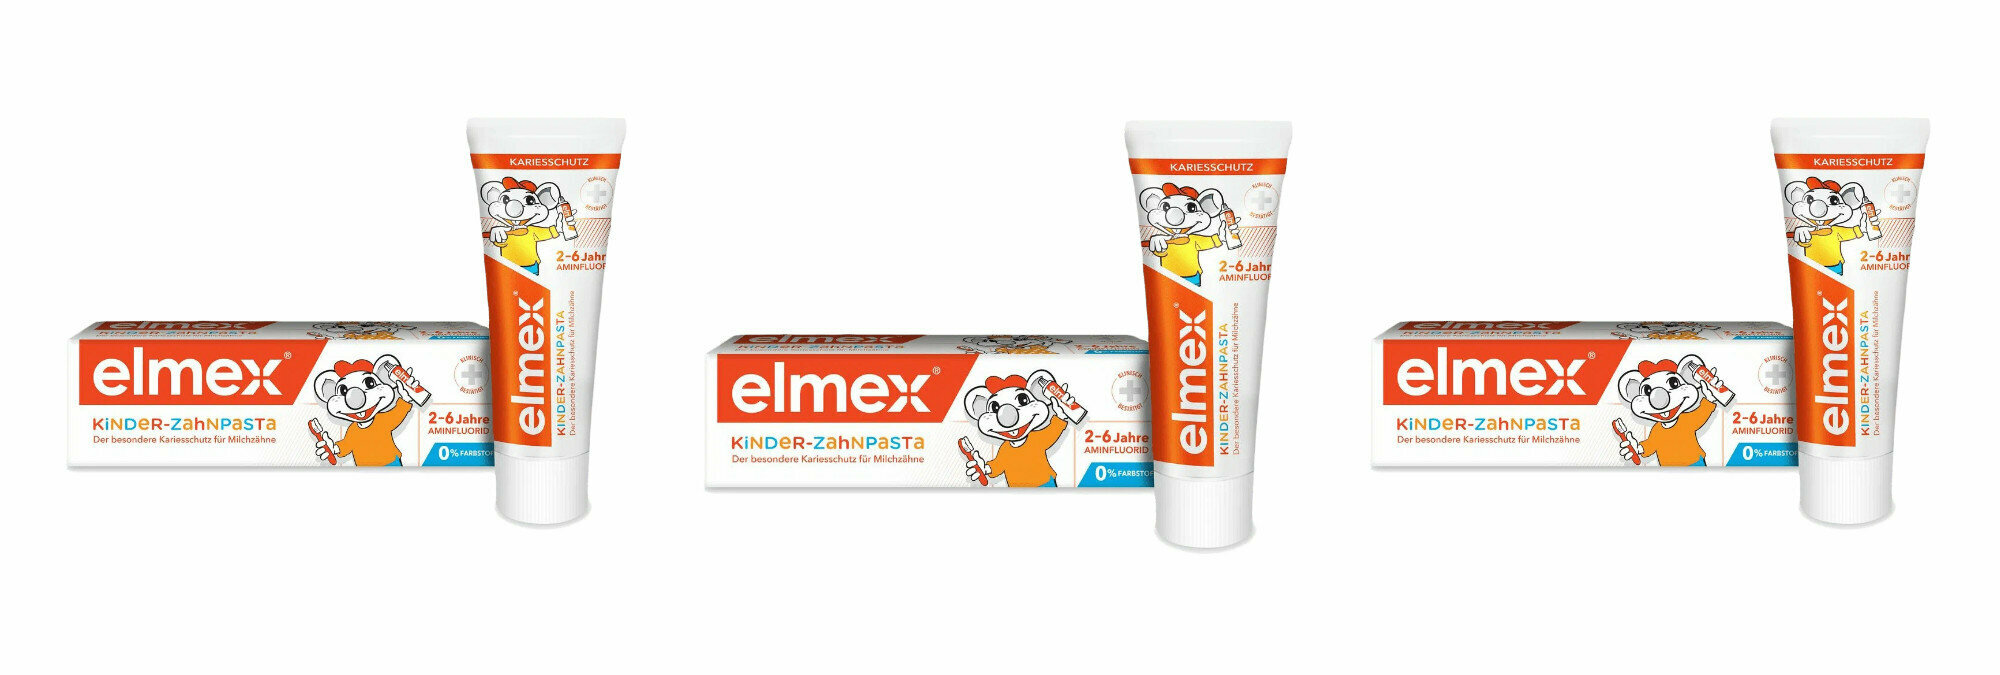 Зубная паста Colgate Elmex Children's для детей 2-6 лет, 50 мл, 3 шт.